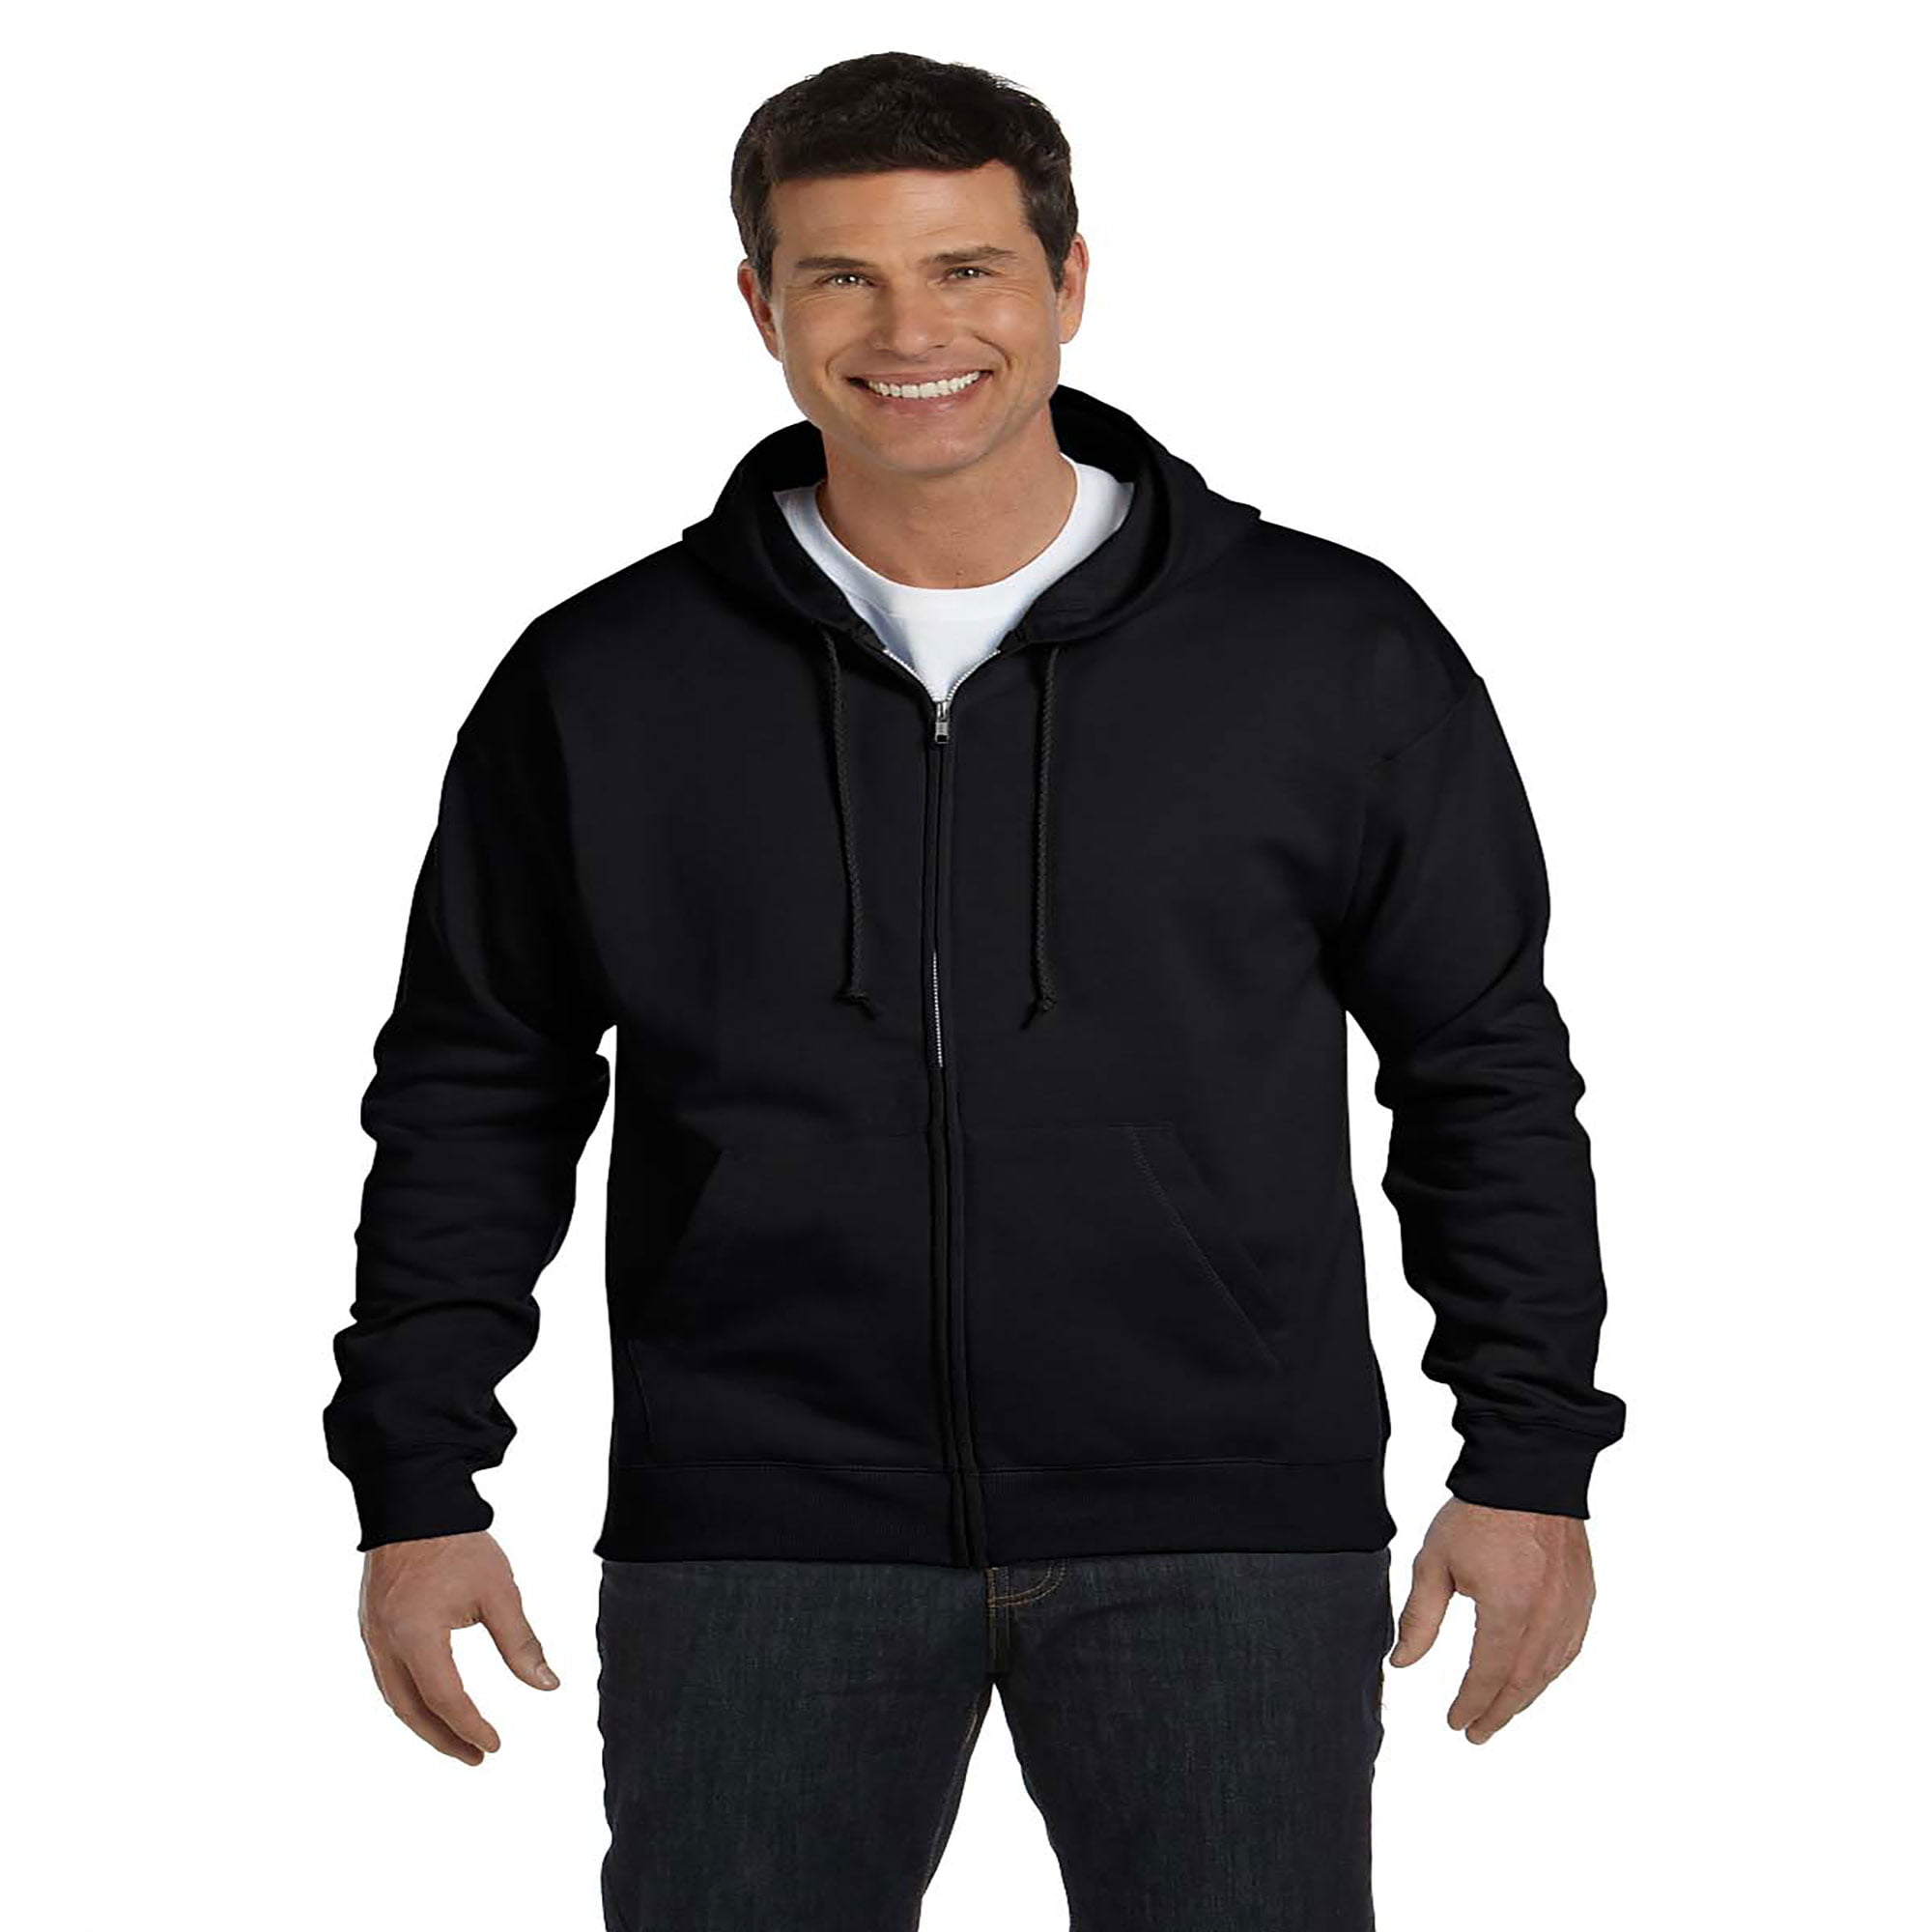 Hanes Mens Comfortblend EcoSmart Full-Zip Hooded Sweatshirt